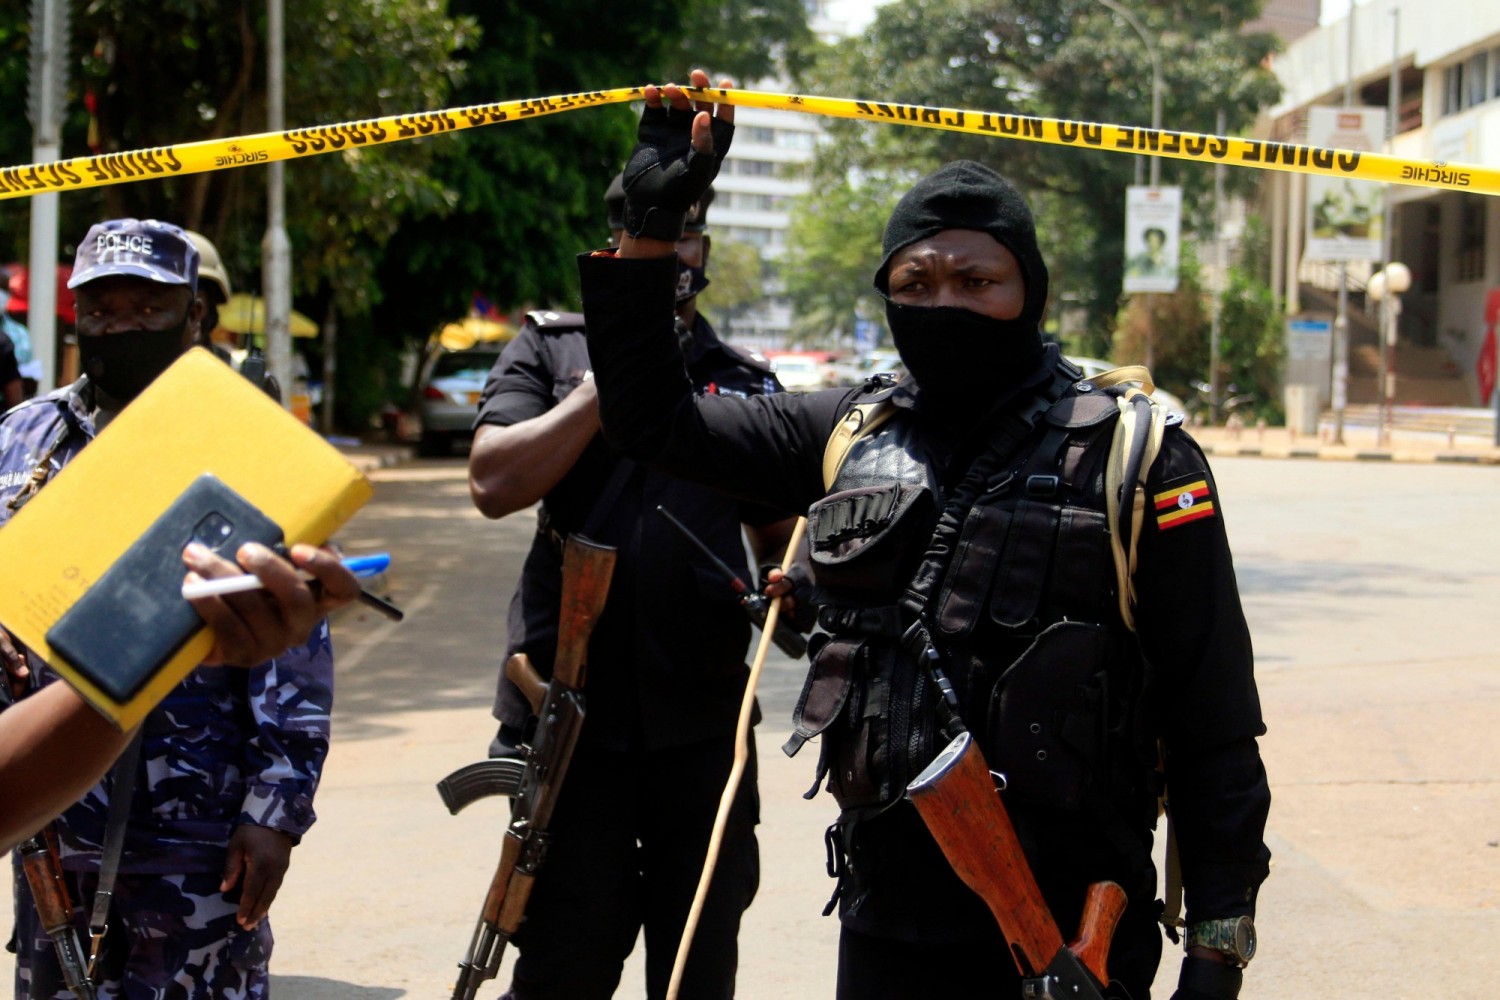 Ouganda : Double attentat à Kampala, cinq suspects dont un Cheick abattus par la police, 21 arrestations